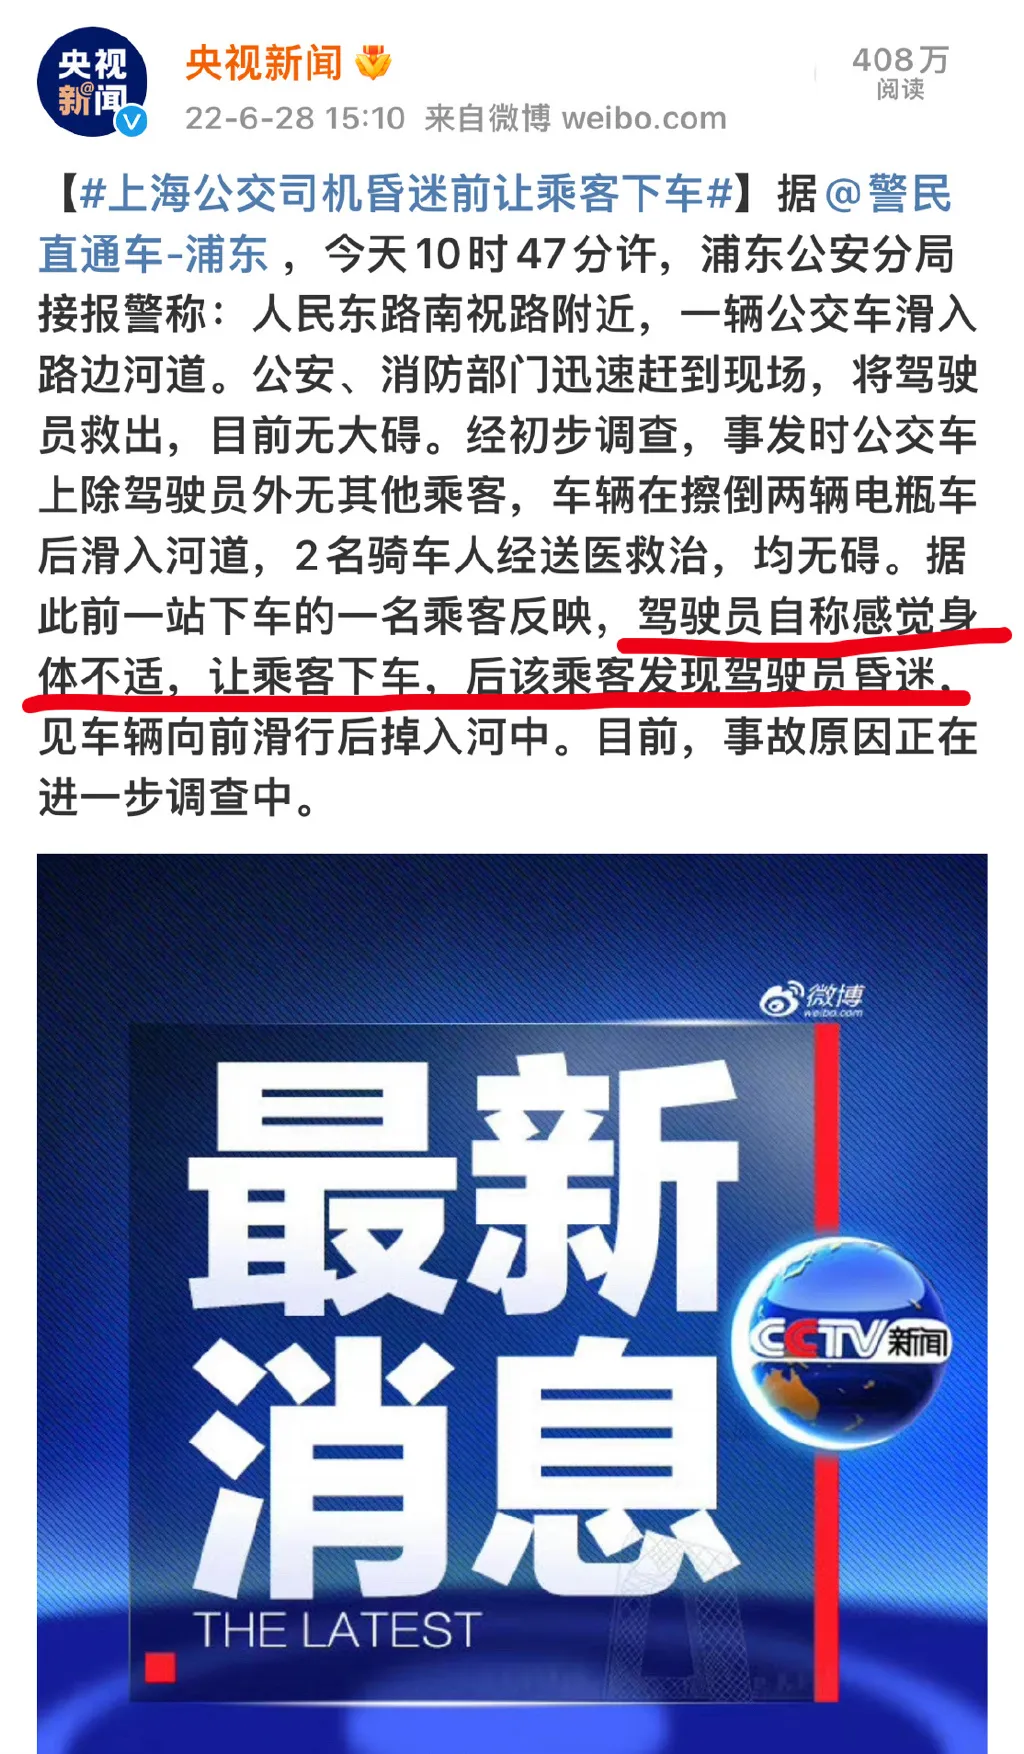 坠江公交车后的追车人找到了 上海坠河公交车后的追车人是司机同事